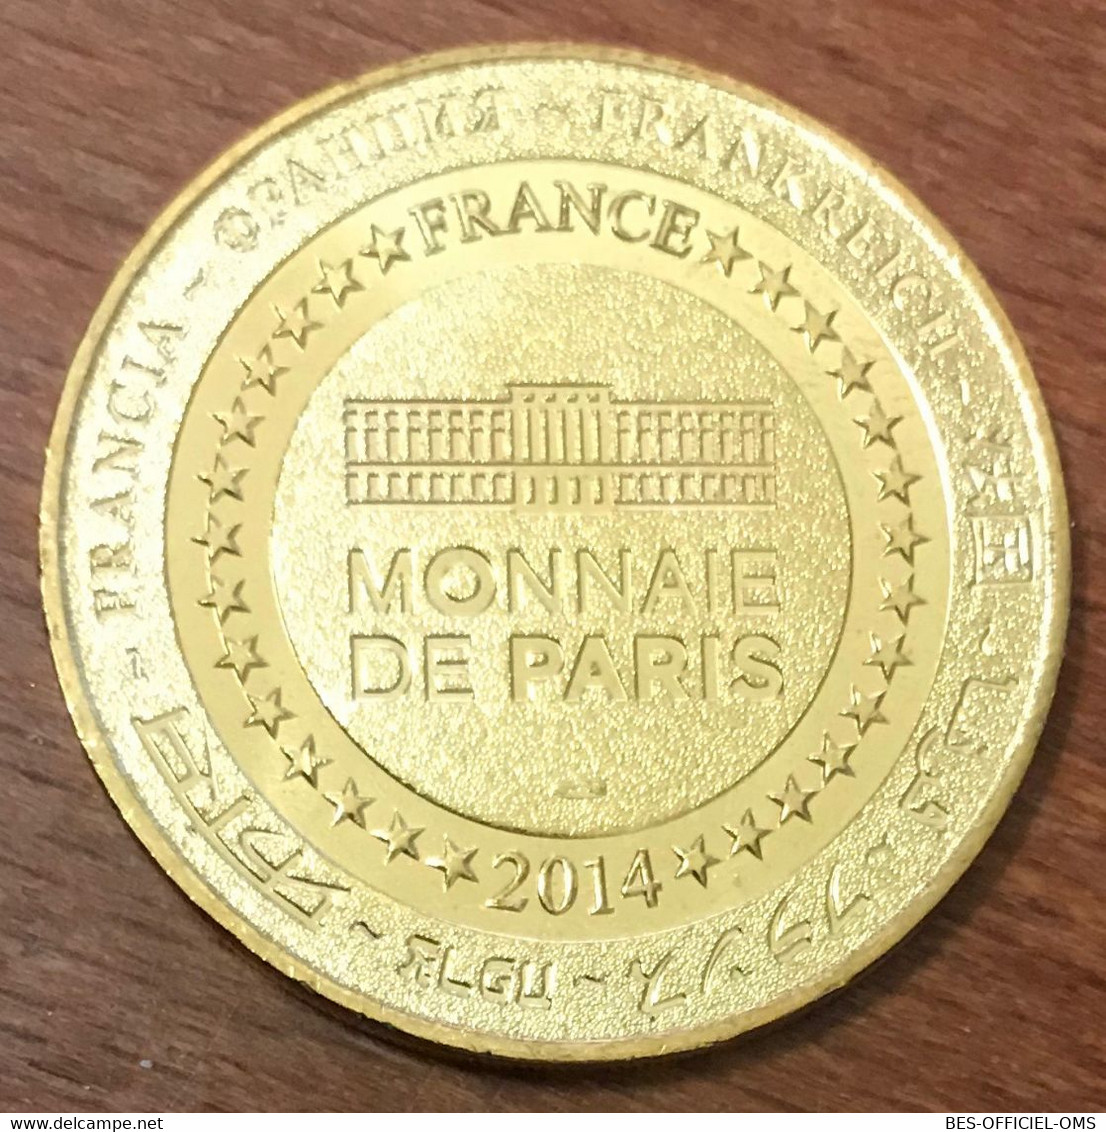 13 AUBAGNE LA STATUE DE ZEUS MDP 2014 MEDAILLE MONNAIE DE PARIS JETON TOURISTIQUE MEDALS COINS TOKENS - 2014